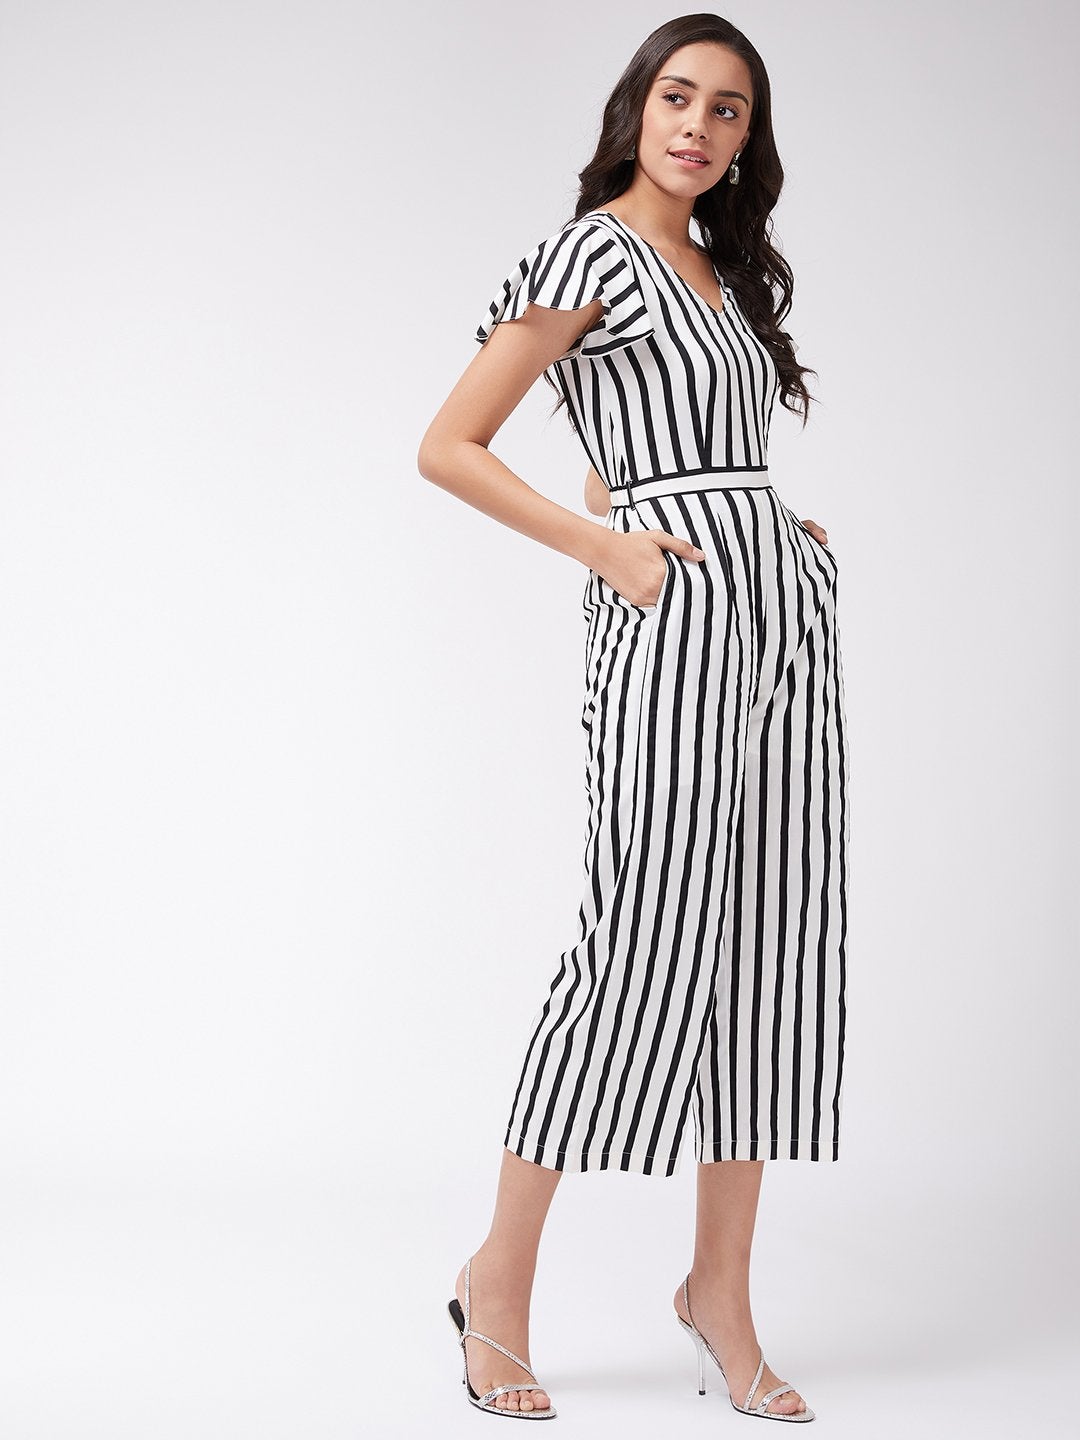 Women's Monocromatic Stripes Jumpsuit - Pannkh